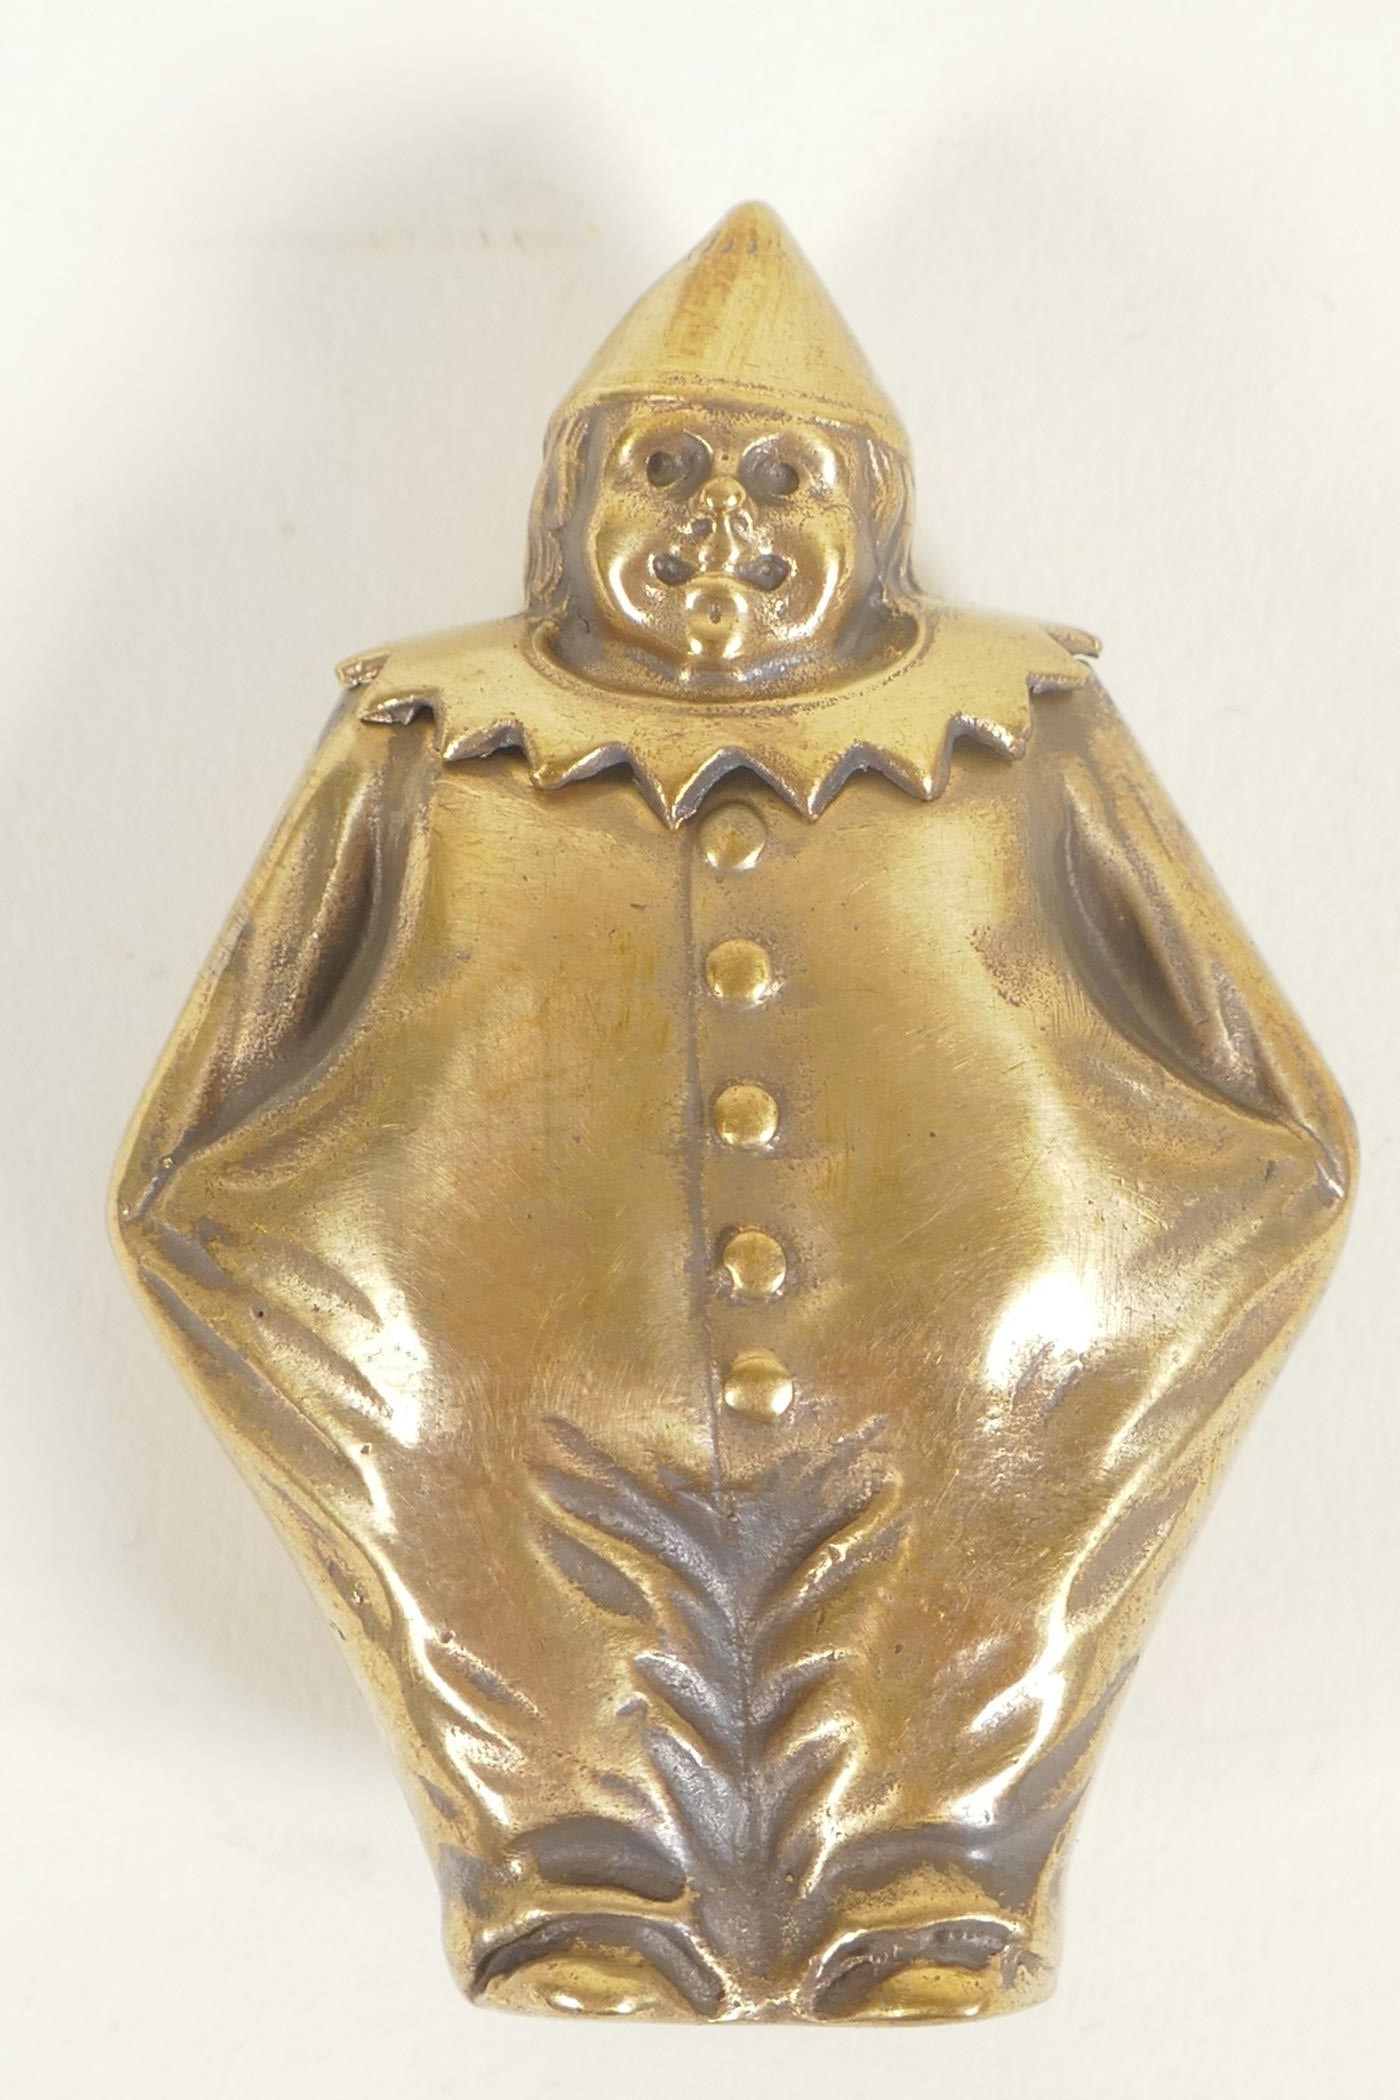 A brass vesta case, 2" long